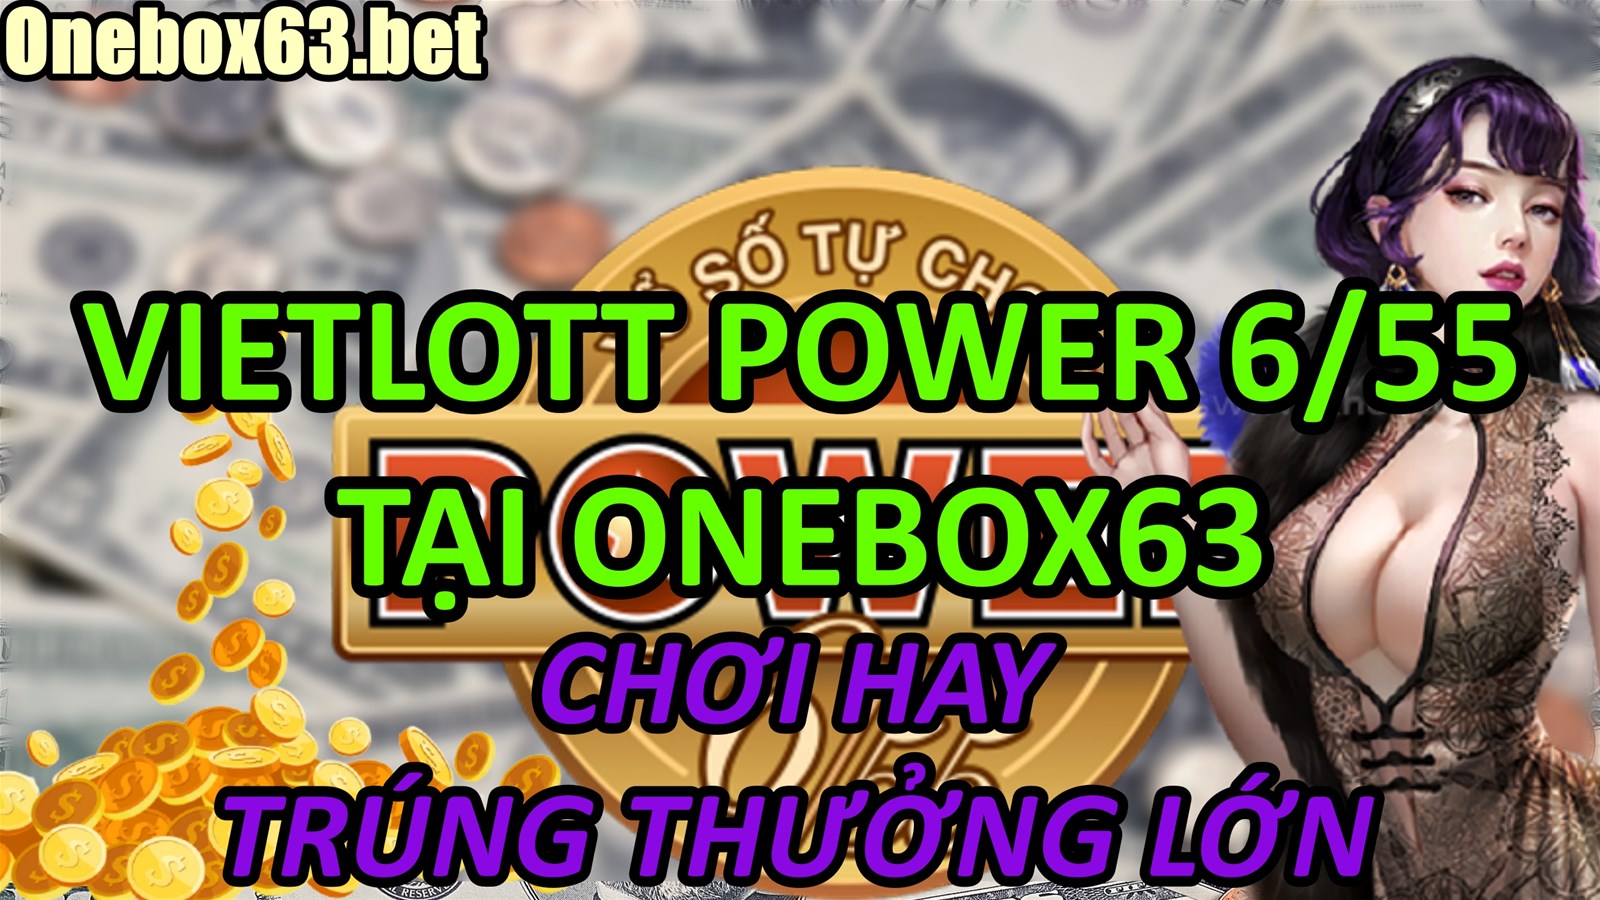 Cách chơi đánh đề Vietlott Power 6/55 Tại Nhà Cái Onebox63 được tổng hợp cập nhật mới nhất